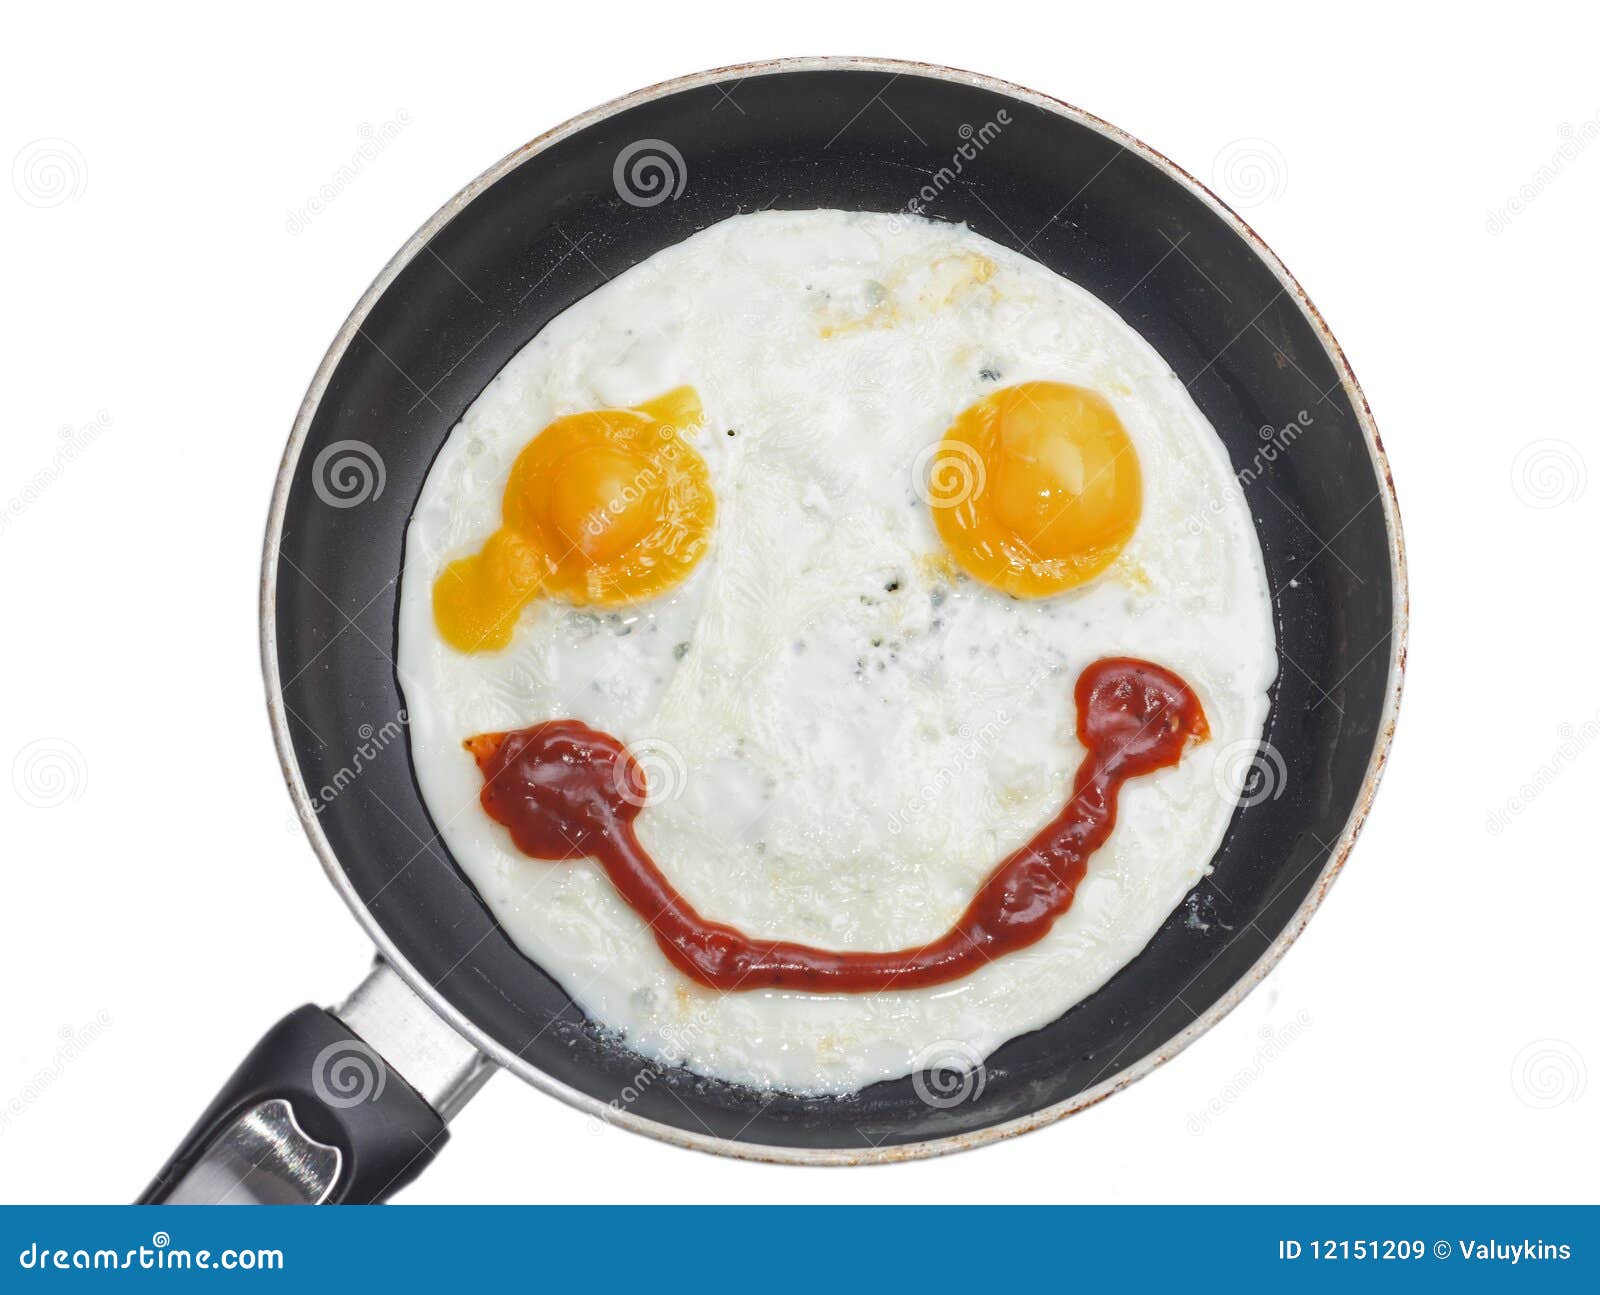 smiling-fried-eggs-12151209.jpg